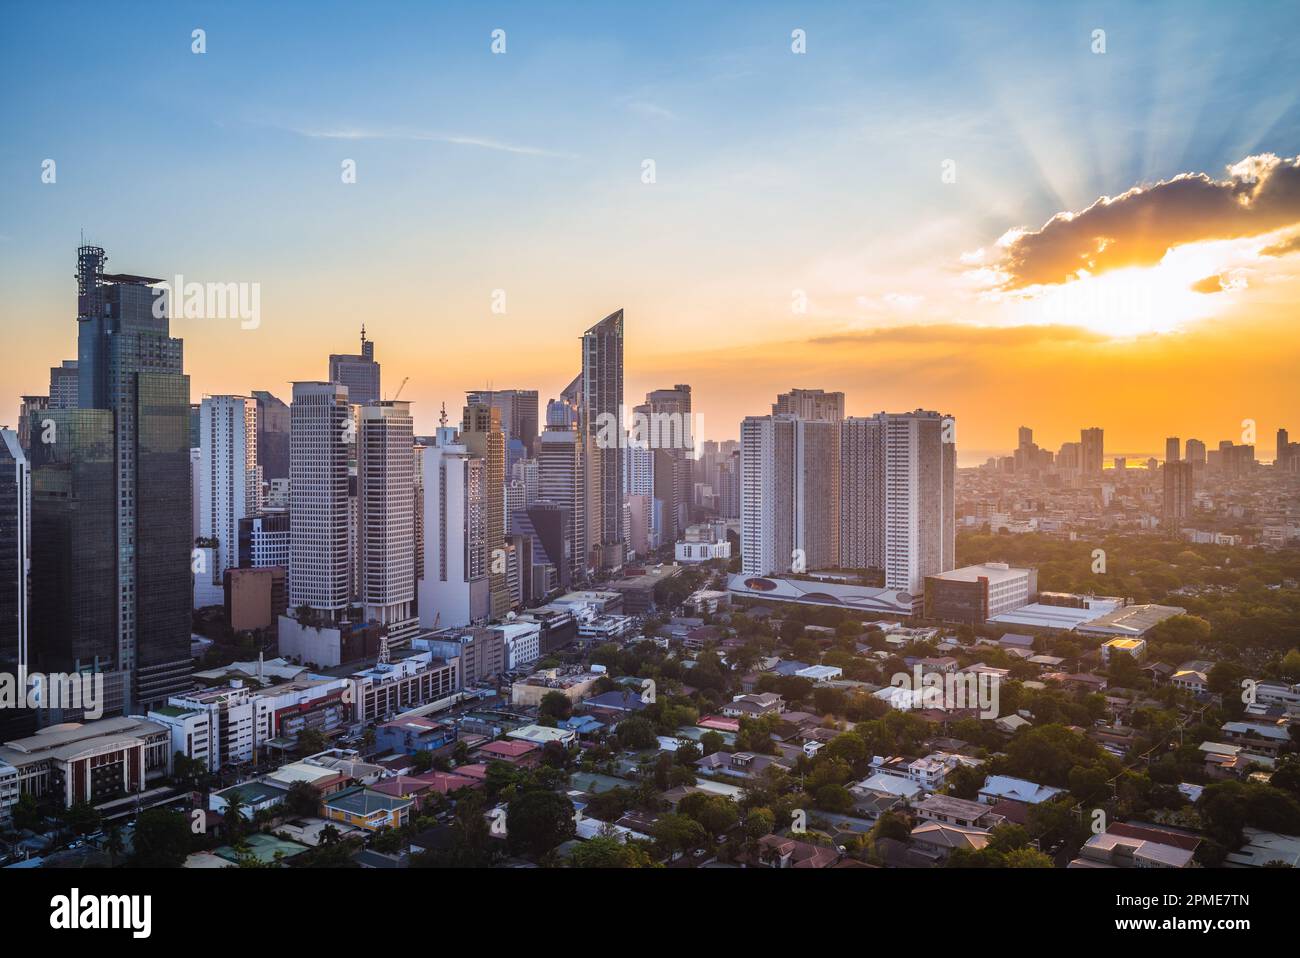 skyline of makati in metro manila, philippines at sunset Stock Photo